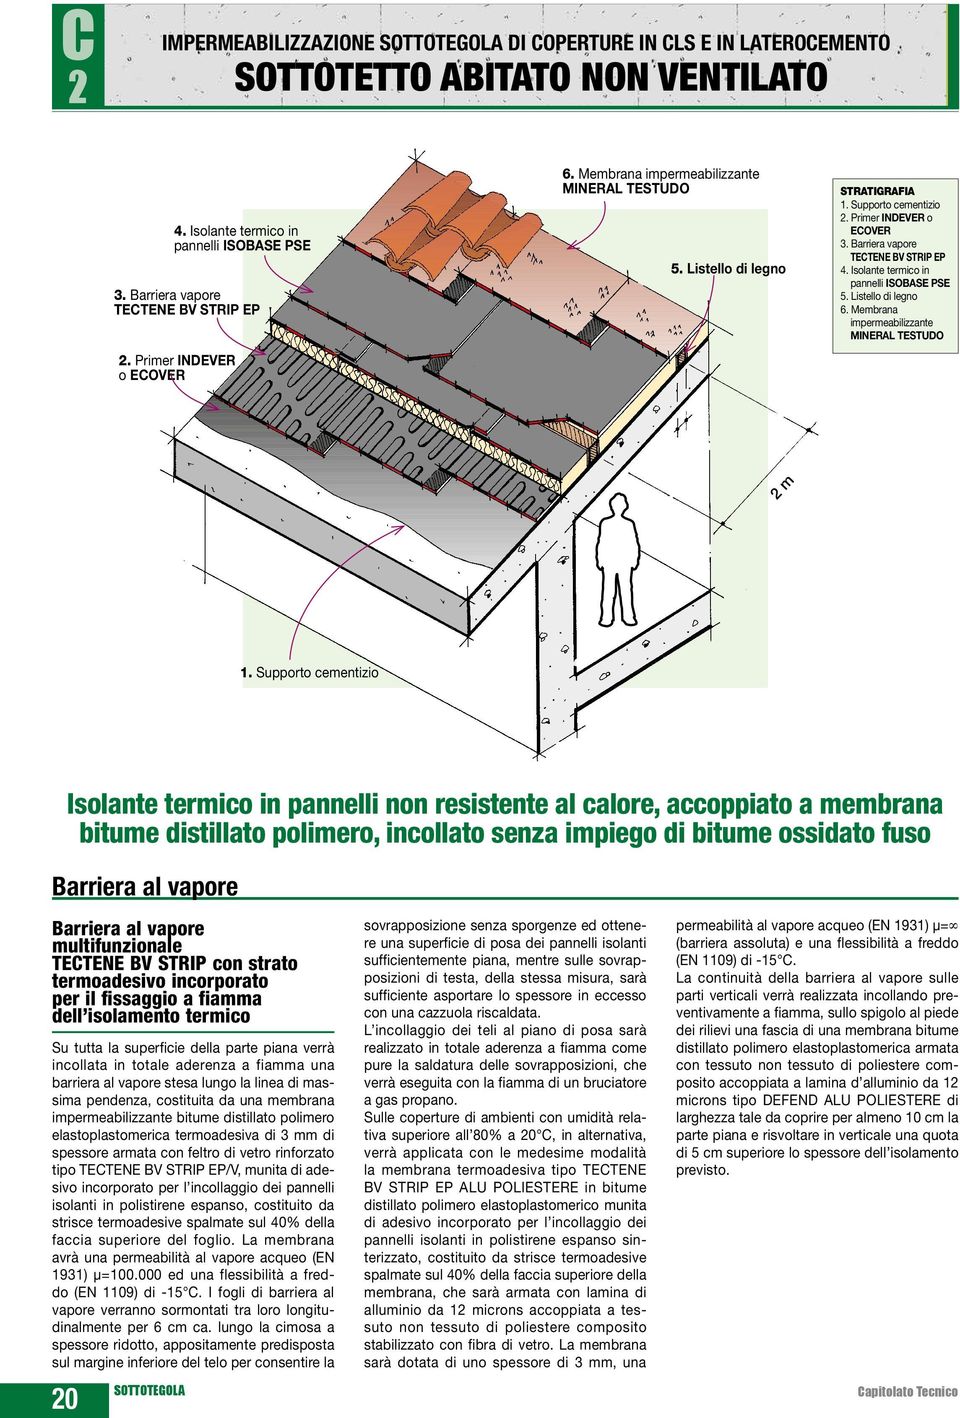 Isolante termico in pannelli ISOBASE PSE 5. Listello di legno 6. Membrana impermeabilizzante 2 m 1.